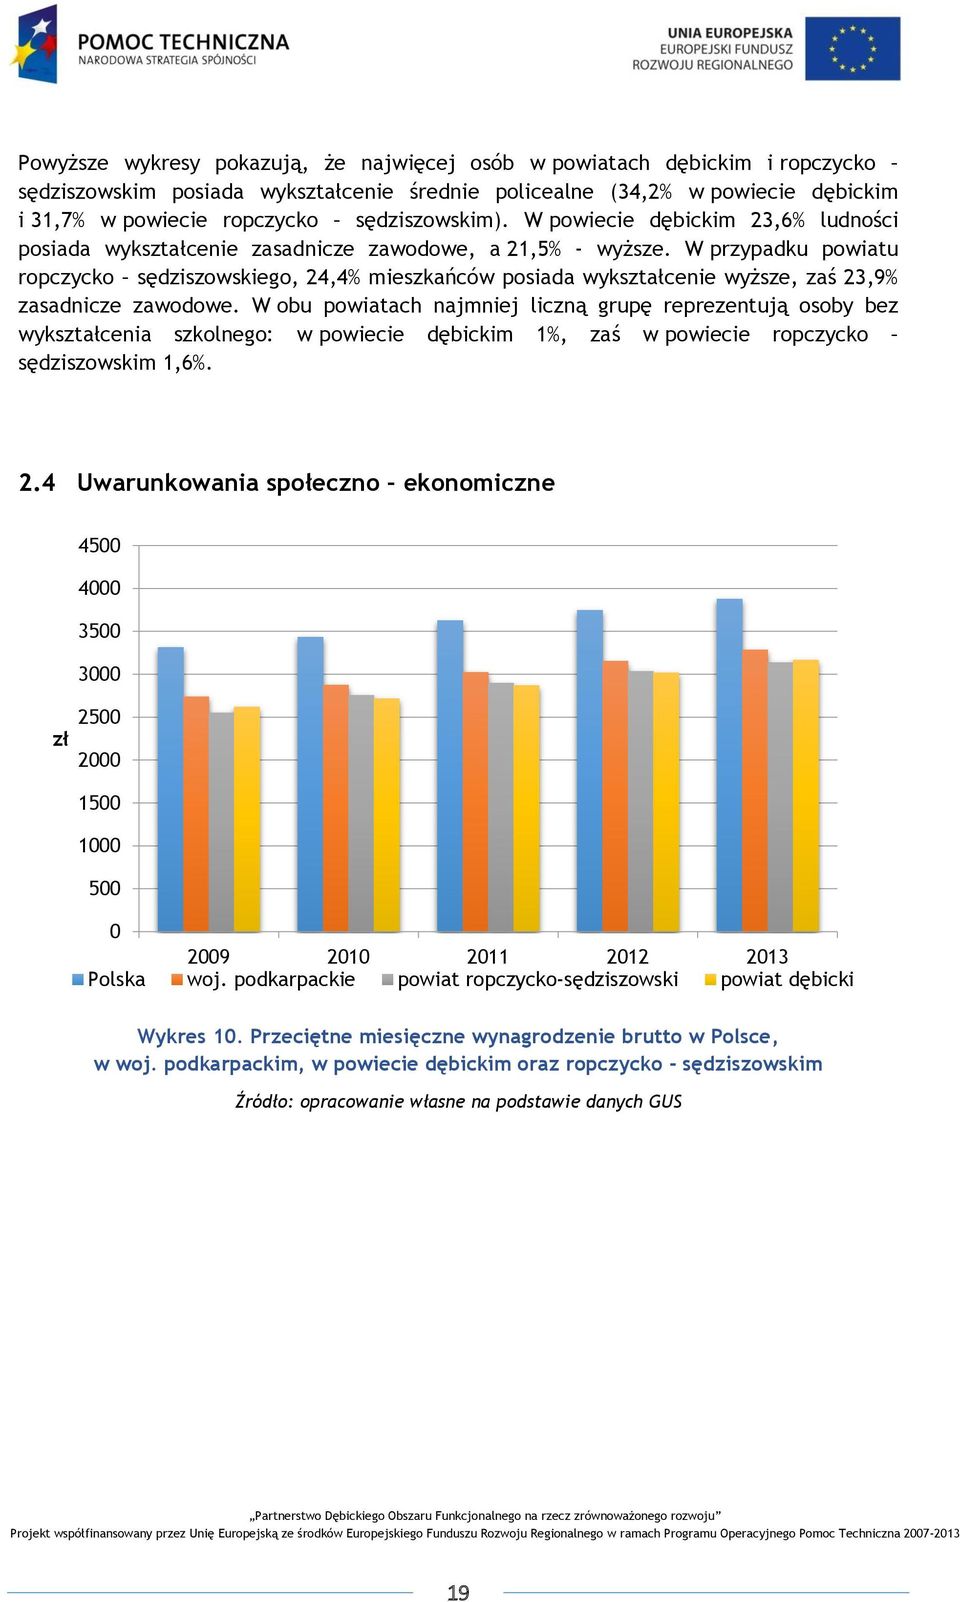 W przypadku powiatu ropczycko sędziszowskiego, 24,4% mieszkańców posiada wykształcenie wyższe, zaś 23,9% zasadnicze zawodowe.